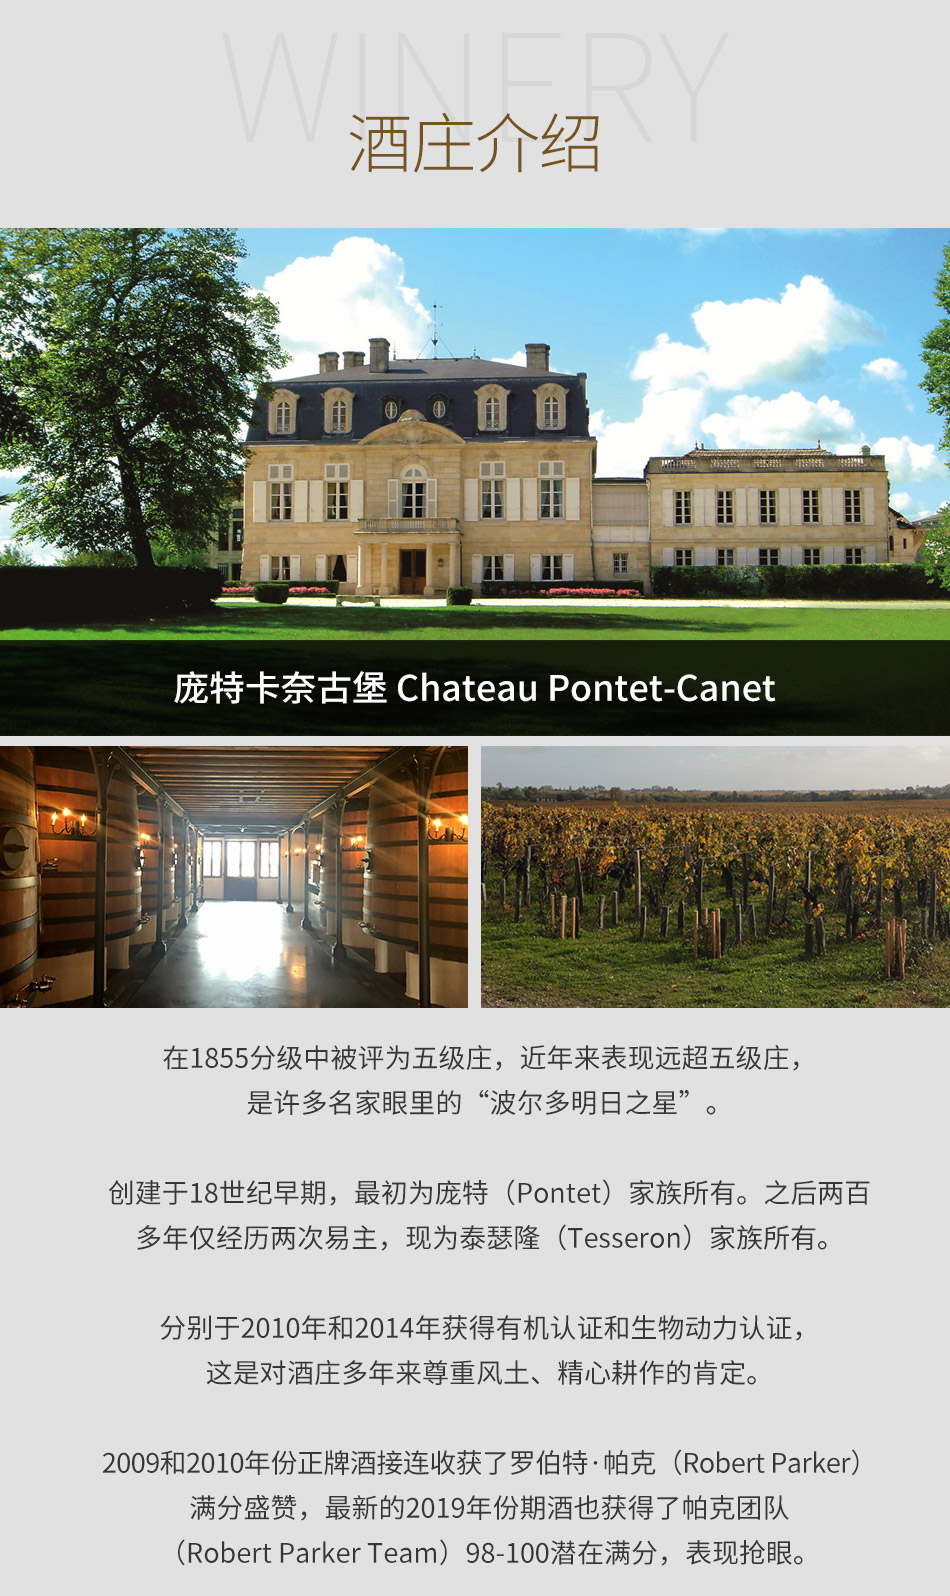 2017年庞特卡内古堡红葡萄酒|2017 Chateau Pontet-Canet|价格多少钱在